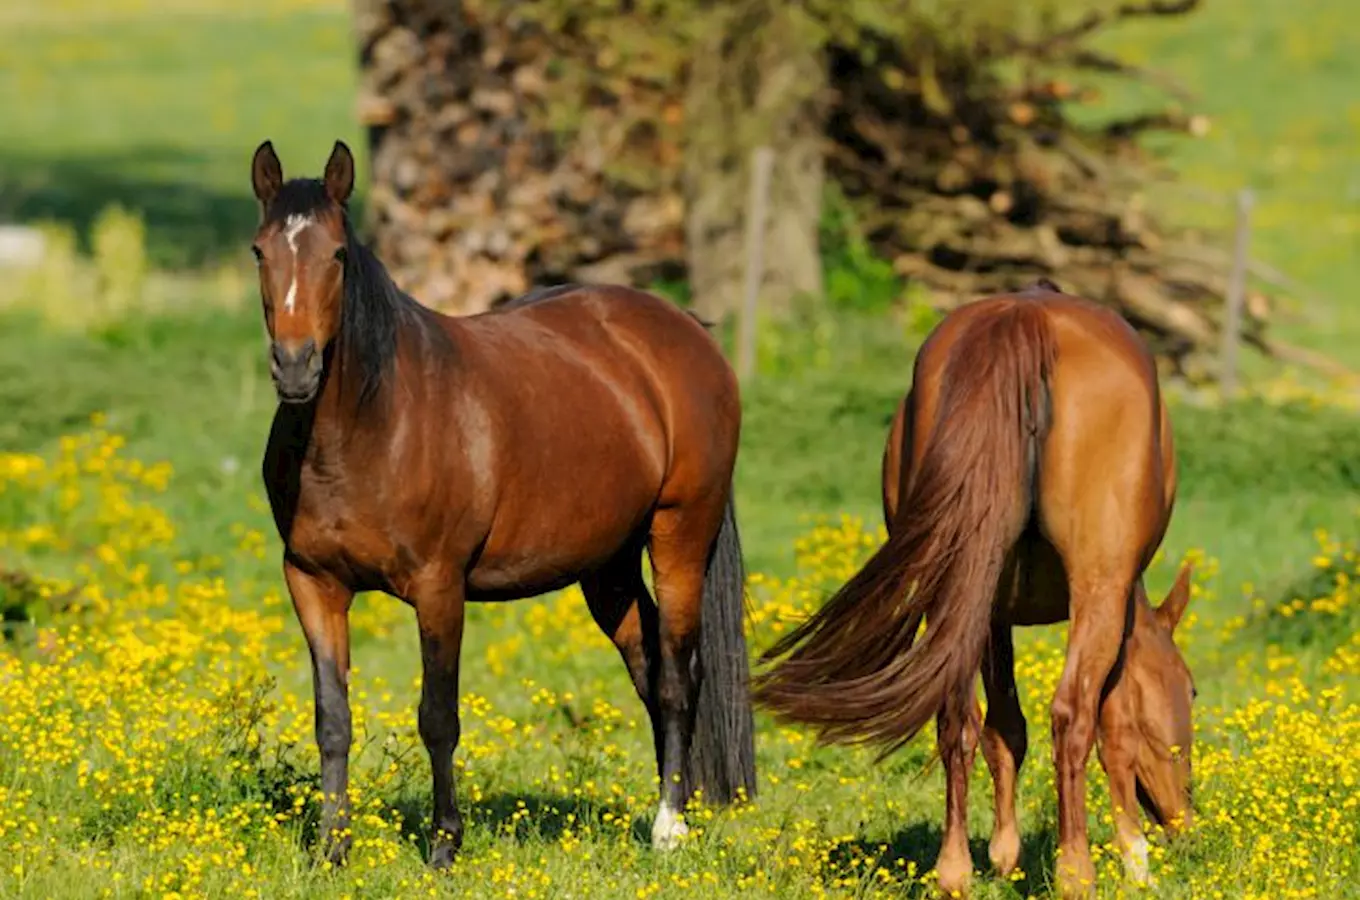 Relaxační víkend s koňmi – relaxujte v sedlech koní a poznejte Chřiby 